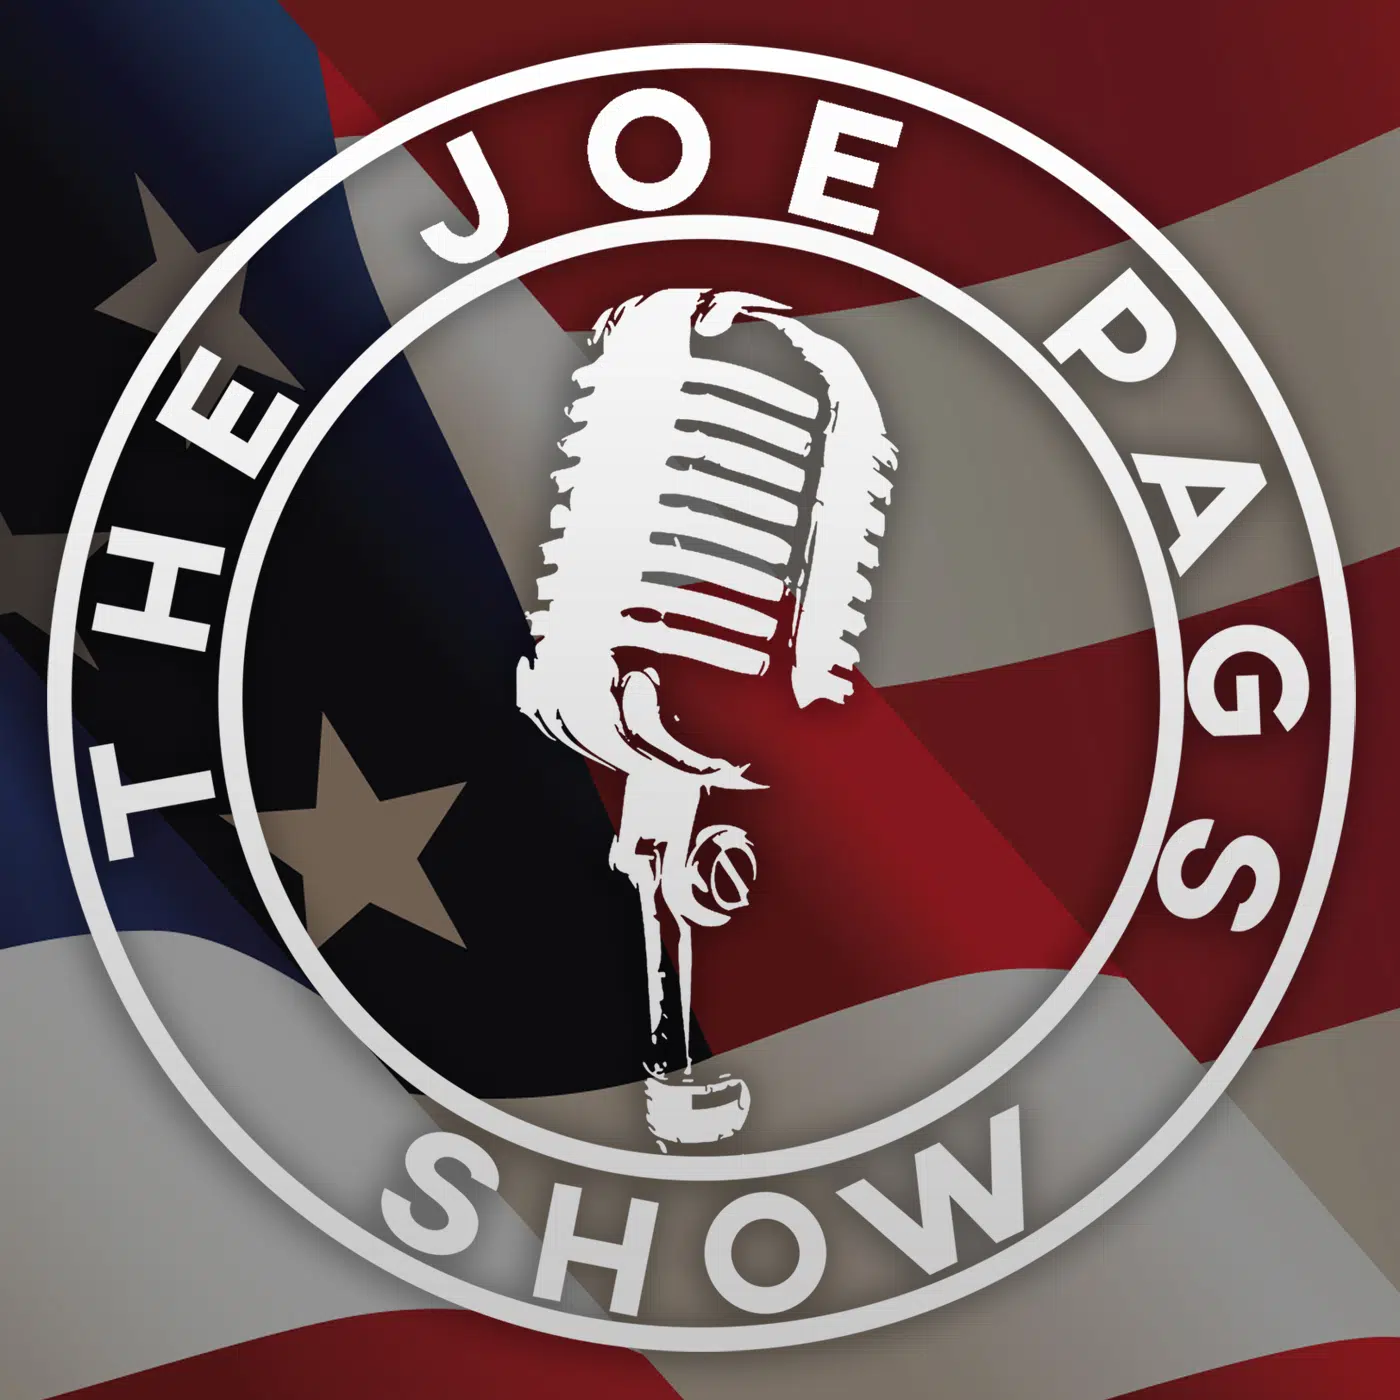 The Joe Pags Show